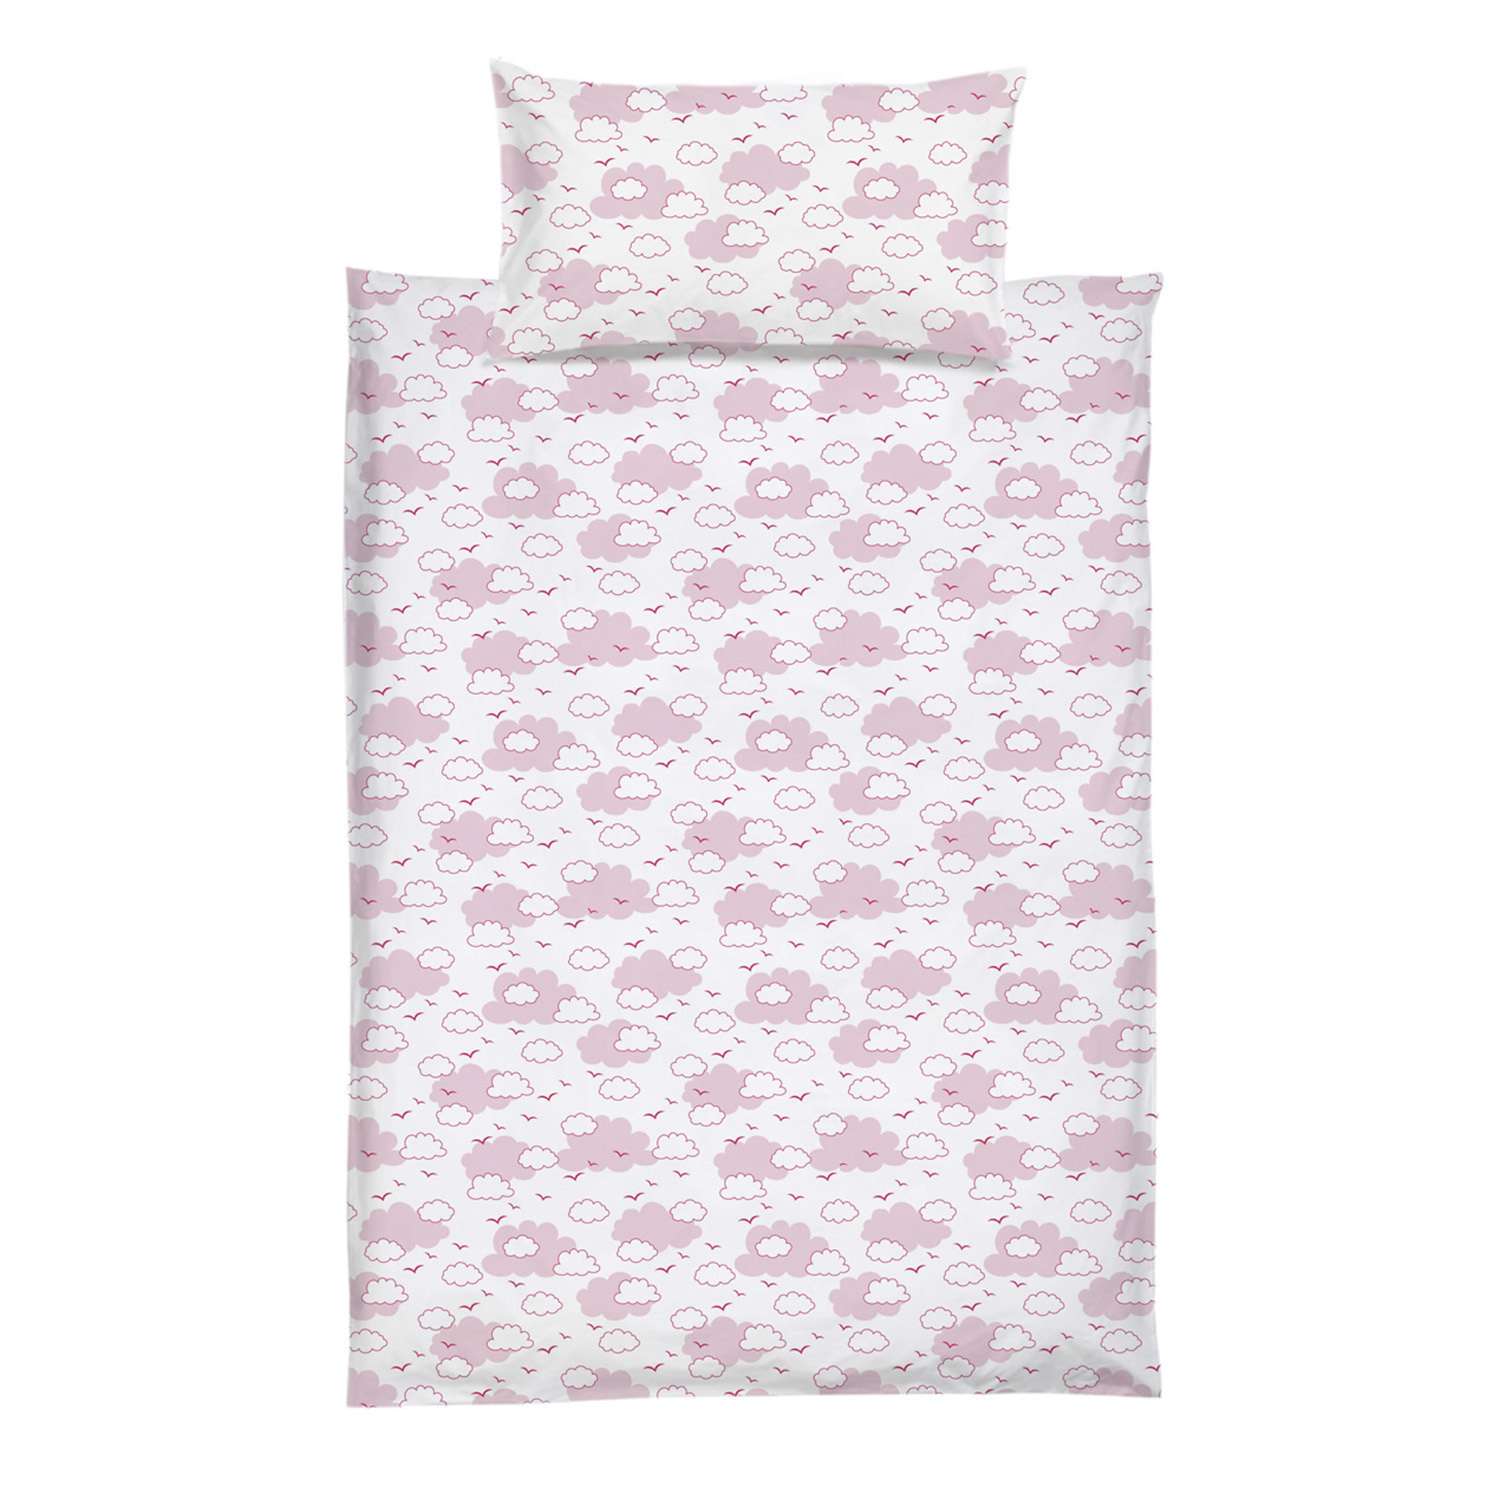 Комплект постельного белья Споки Ноки 2предмета Розовый C811/6RO - фото 1